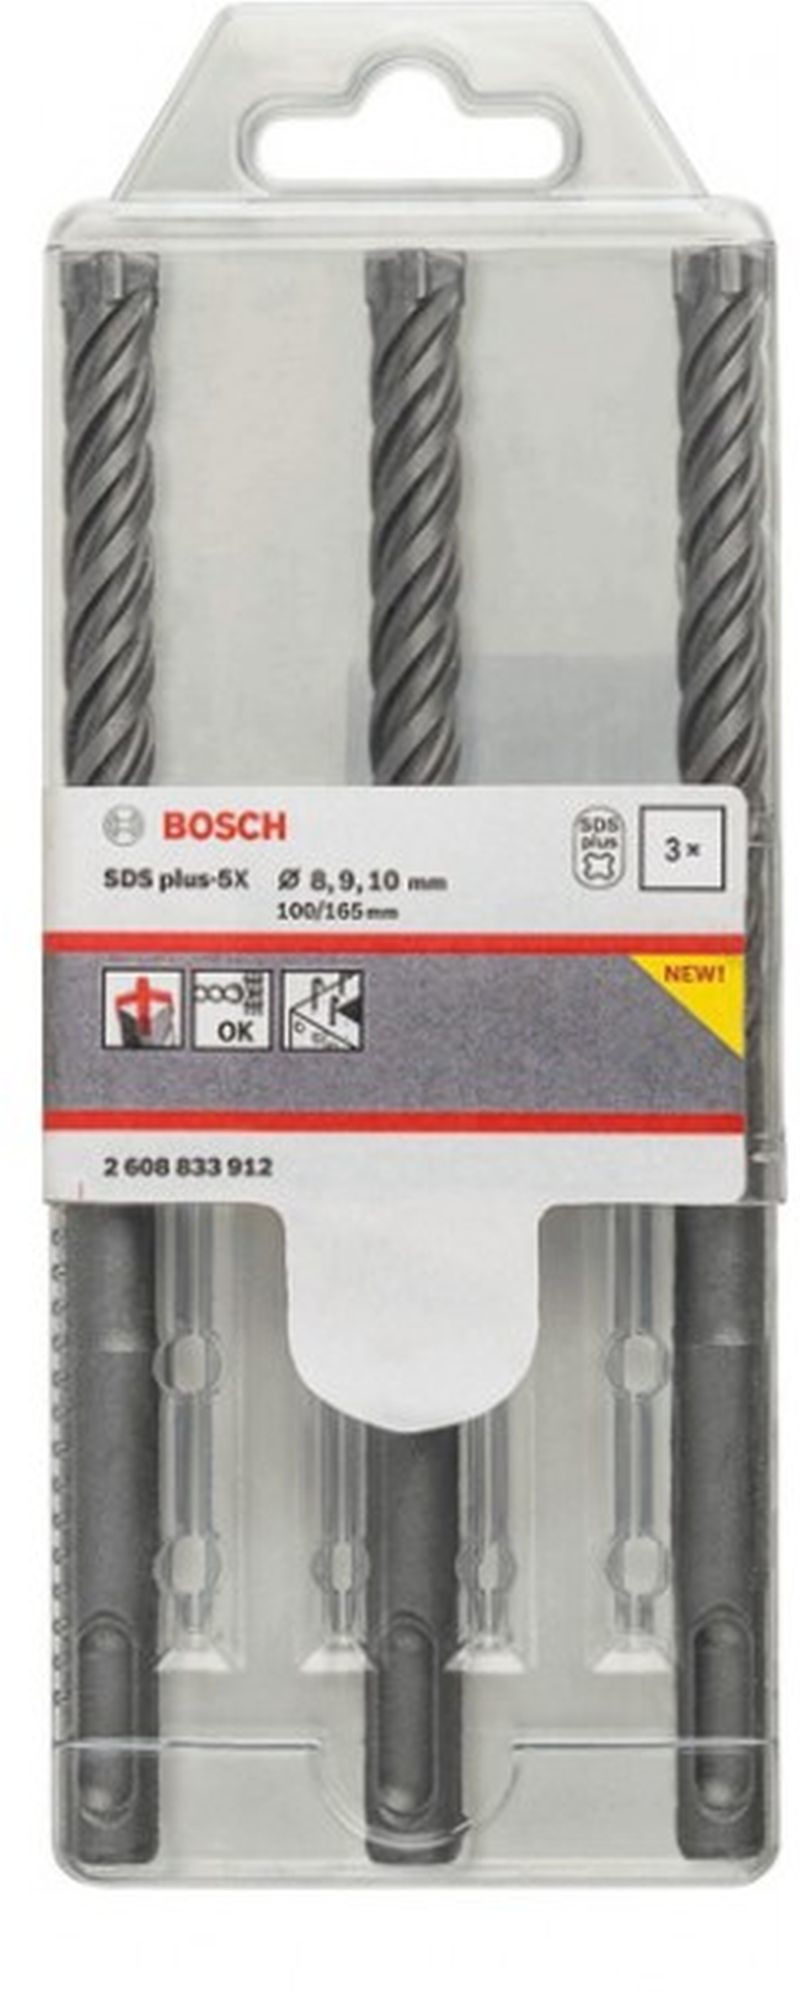 Bosch 3-częściowy zestaw wierteł do młotów SDS-plus-5X 2608833912